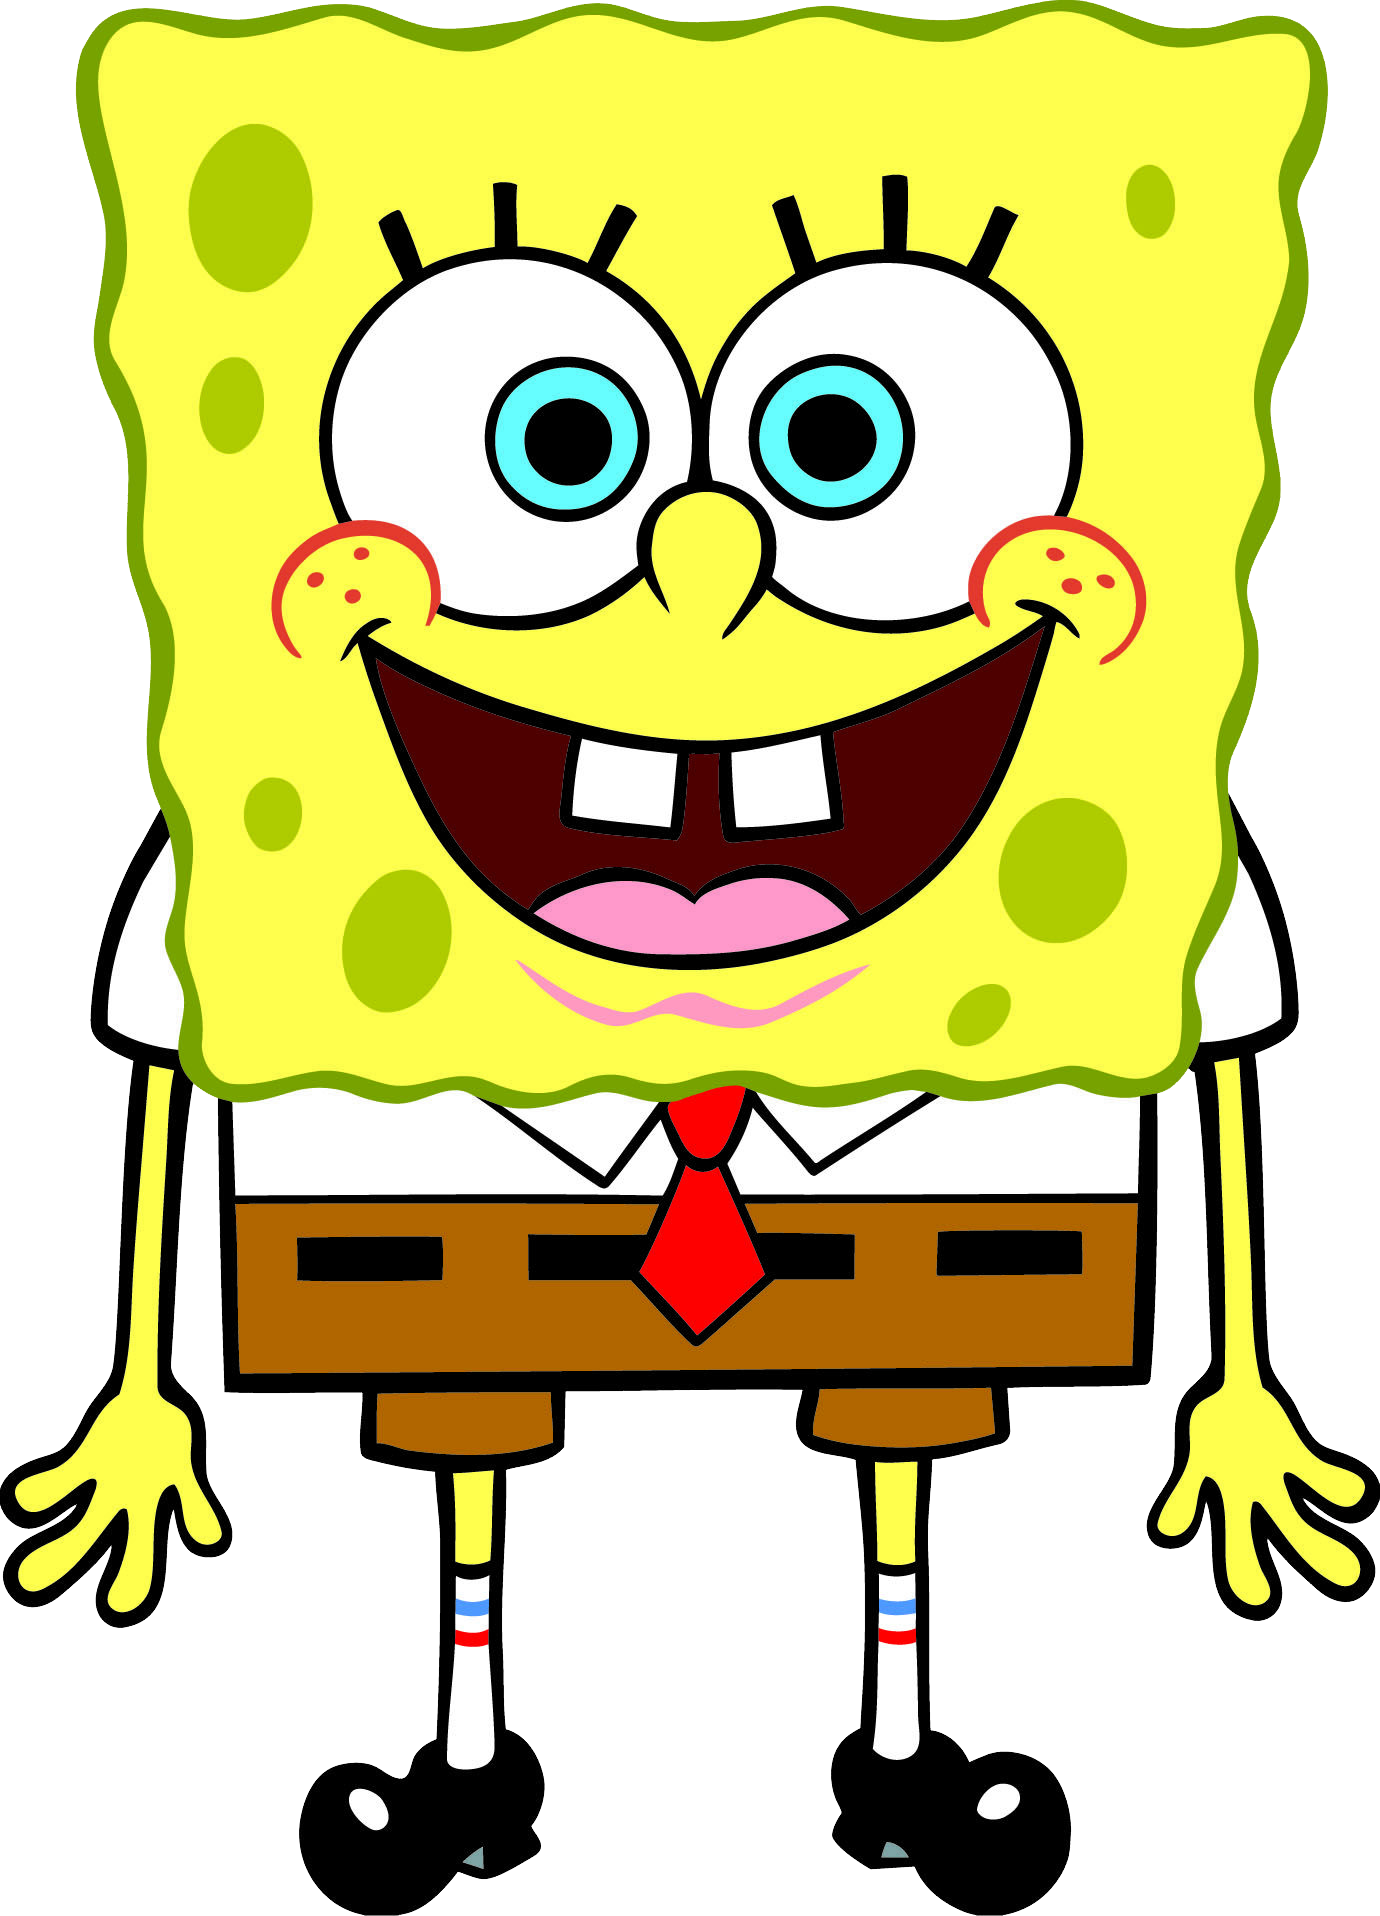 Download Sponge Bob PNG Image for Free